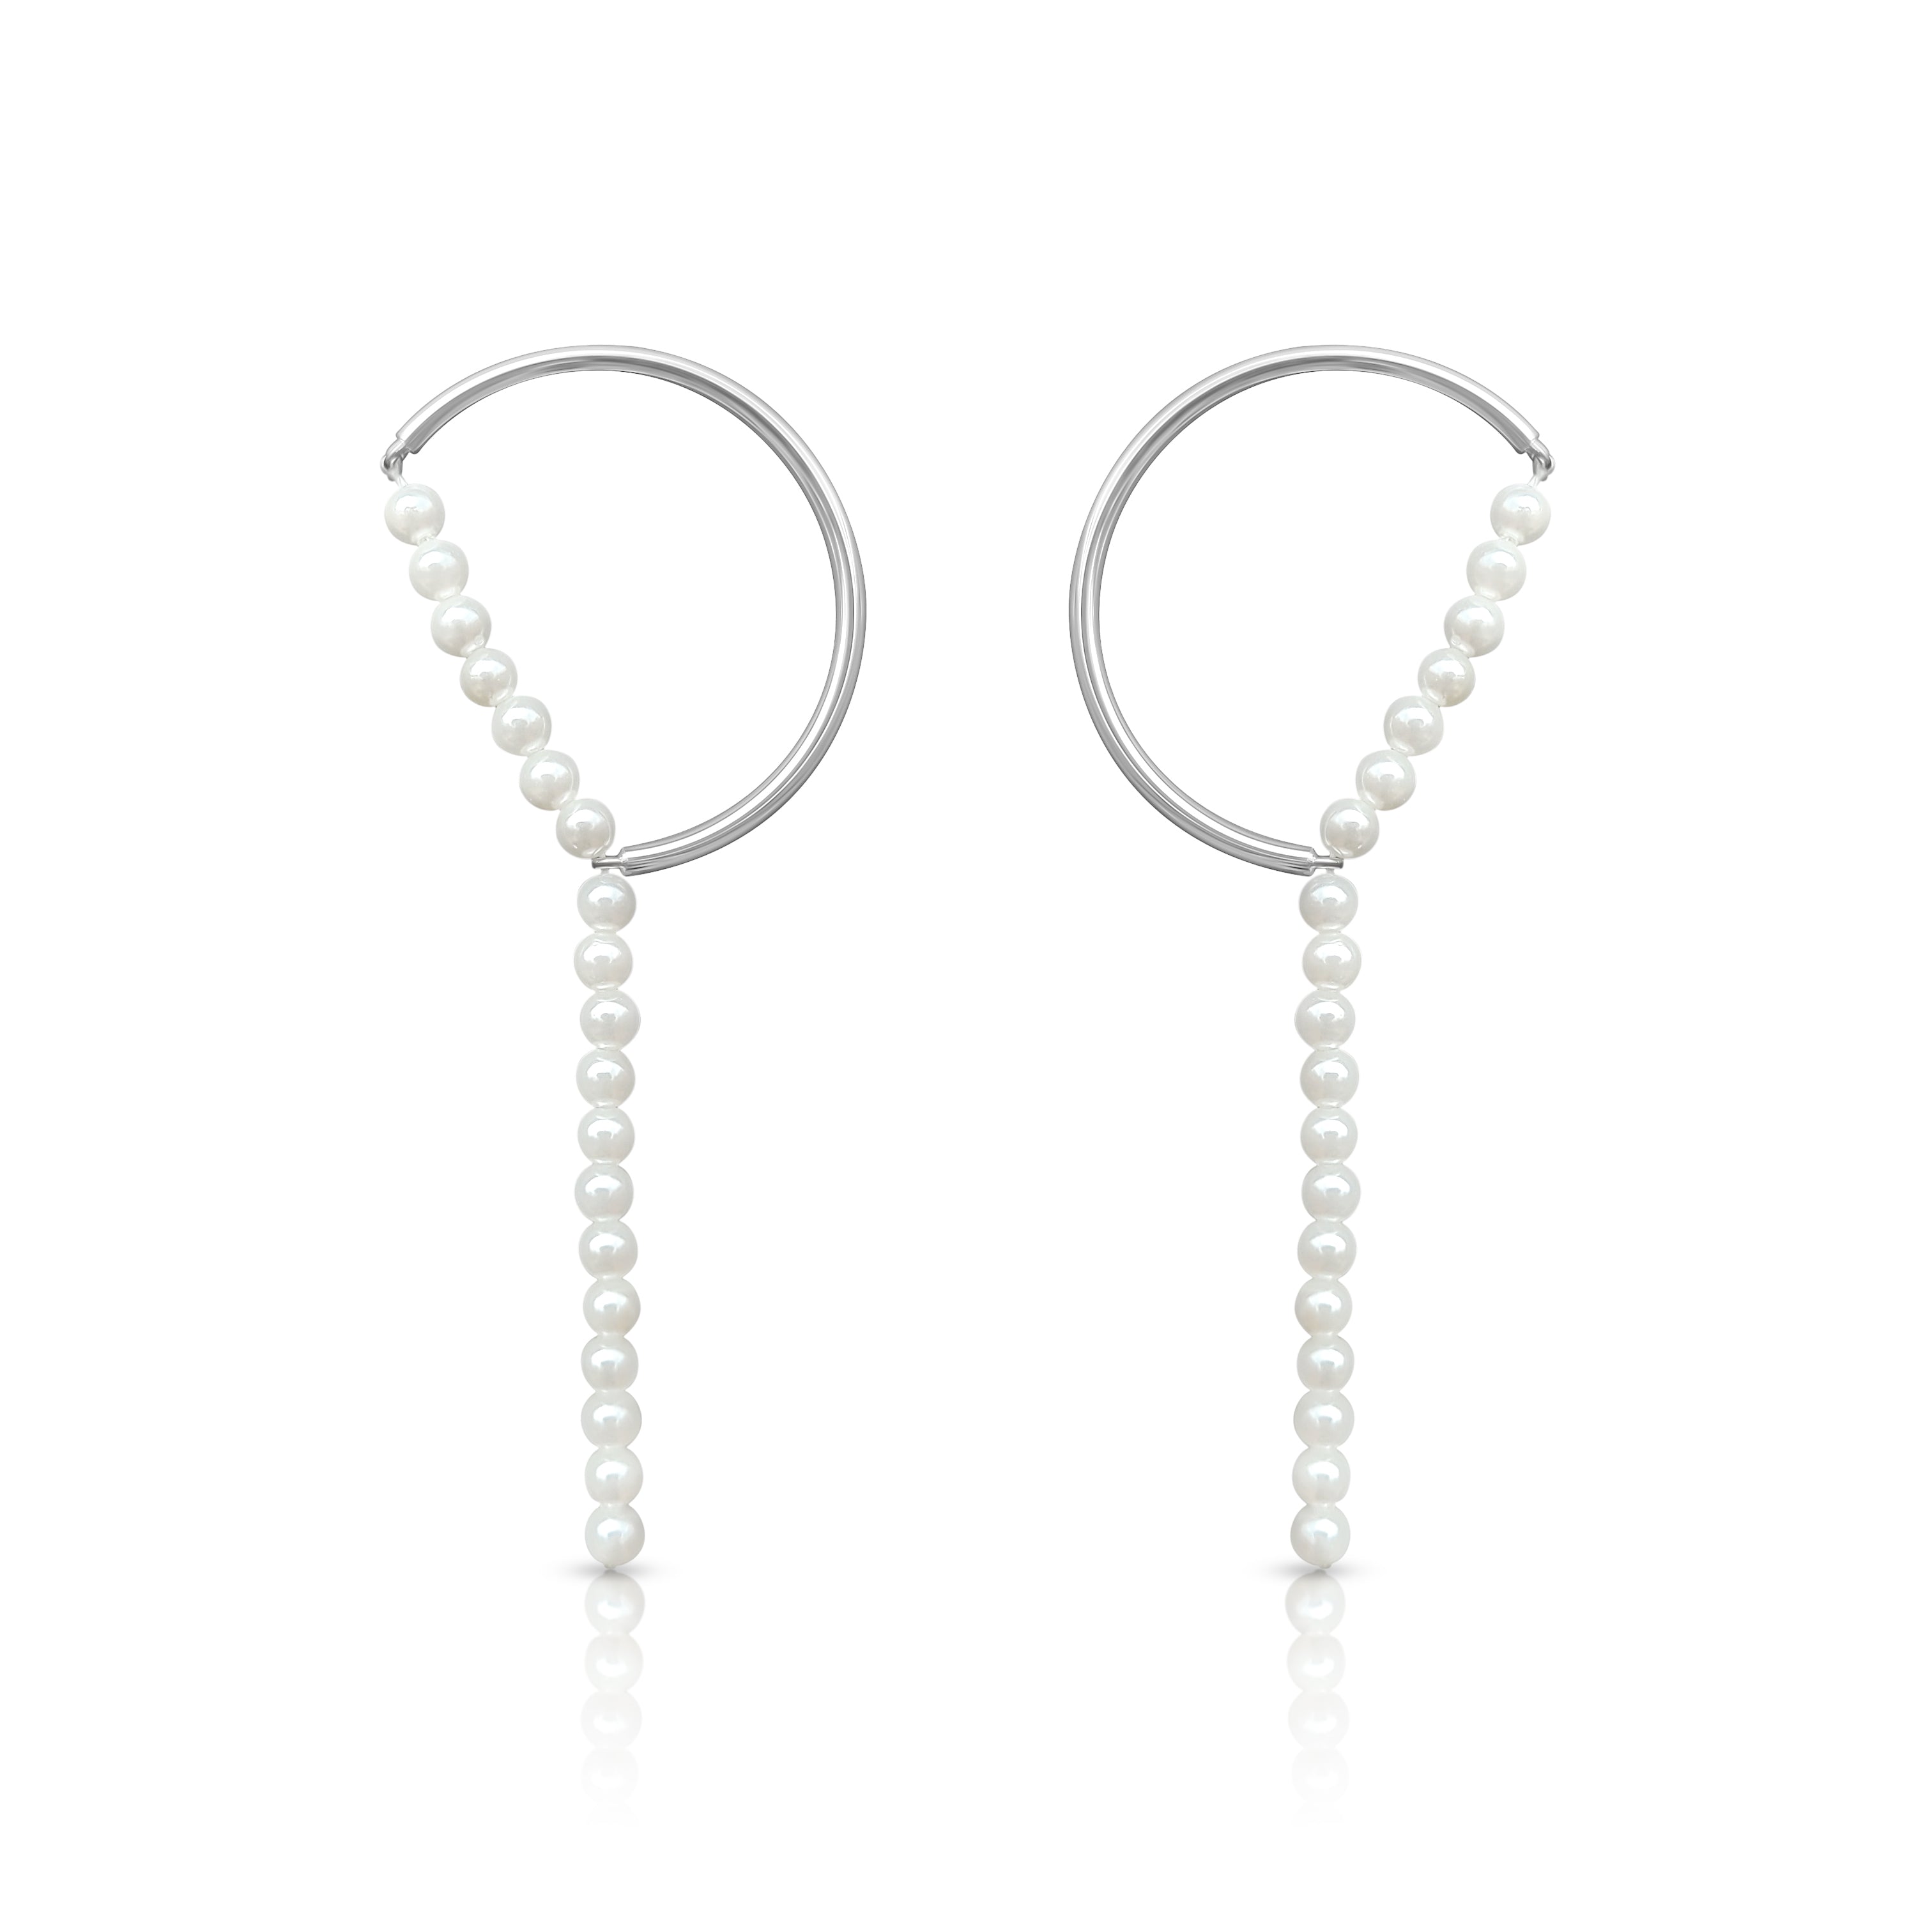 Pearl River earrings